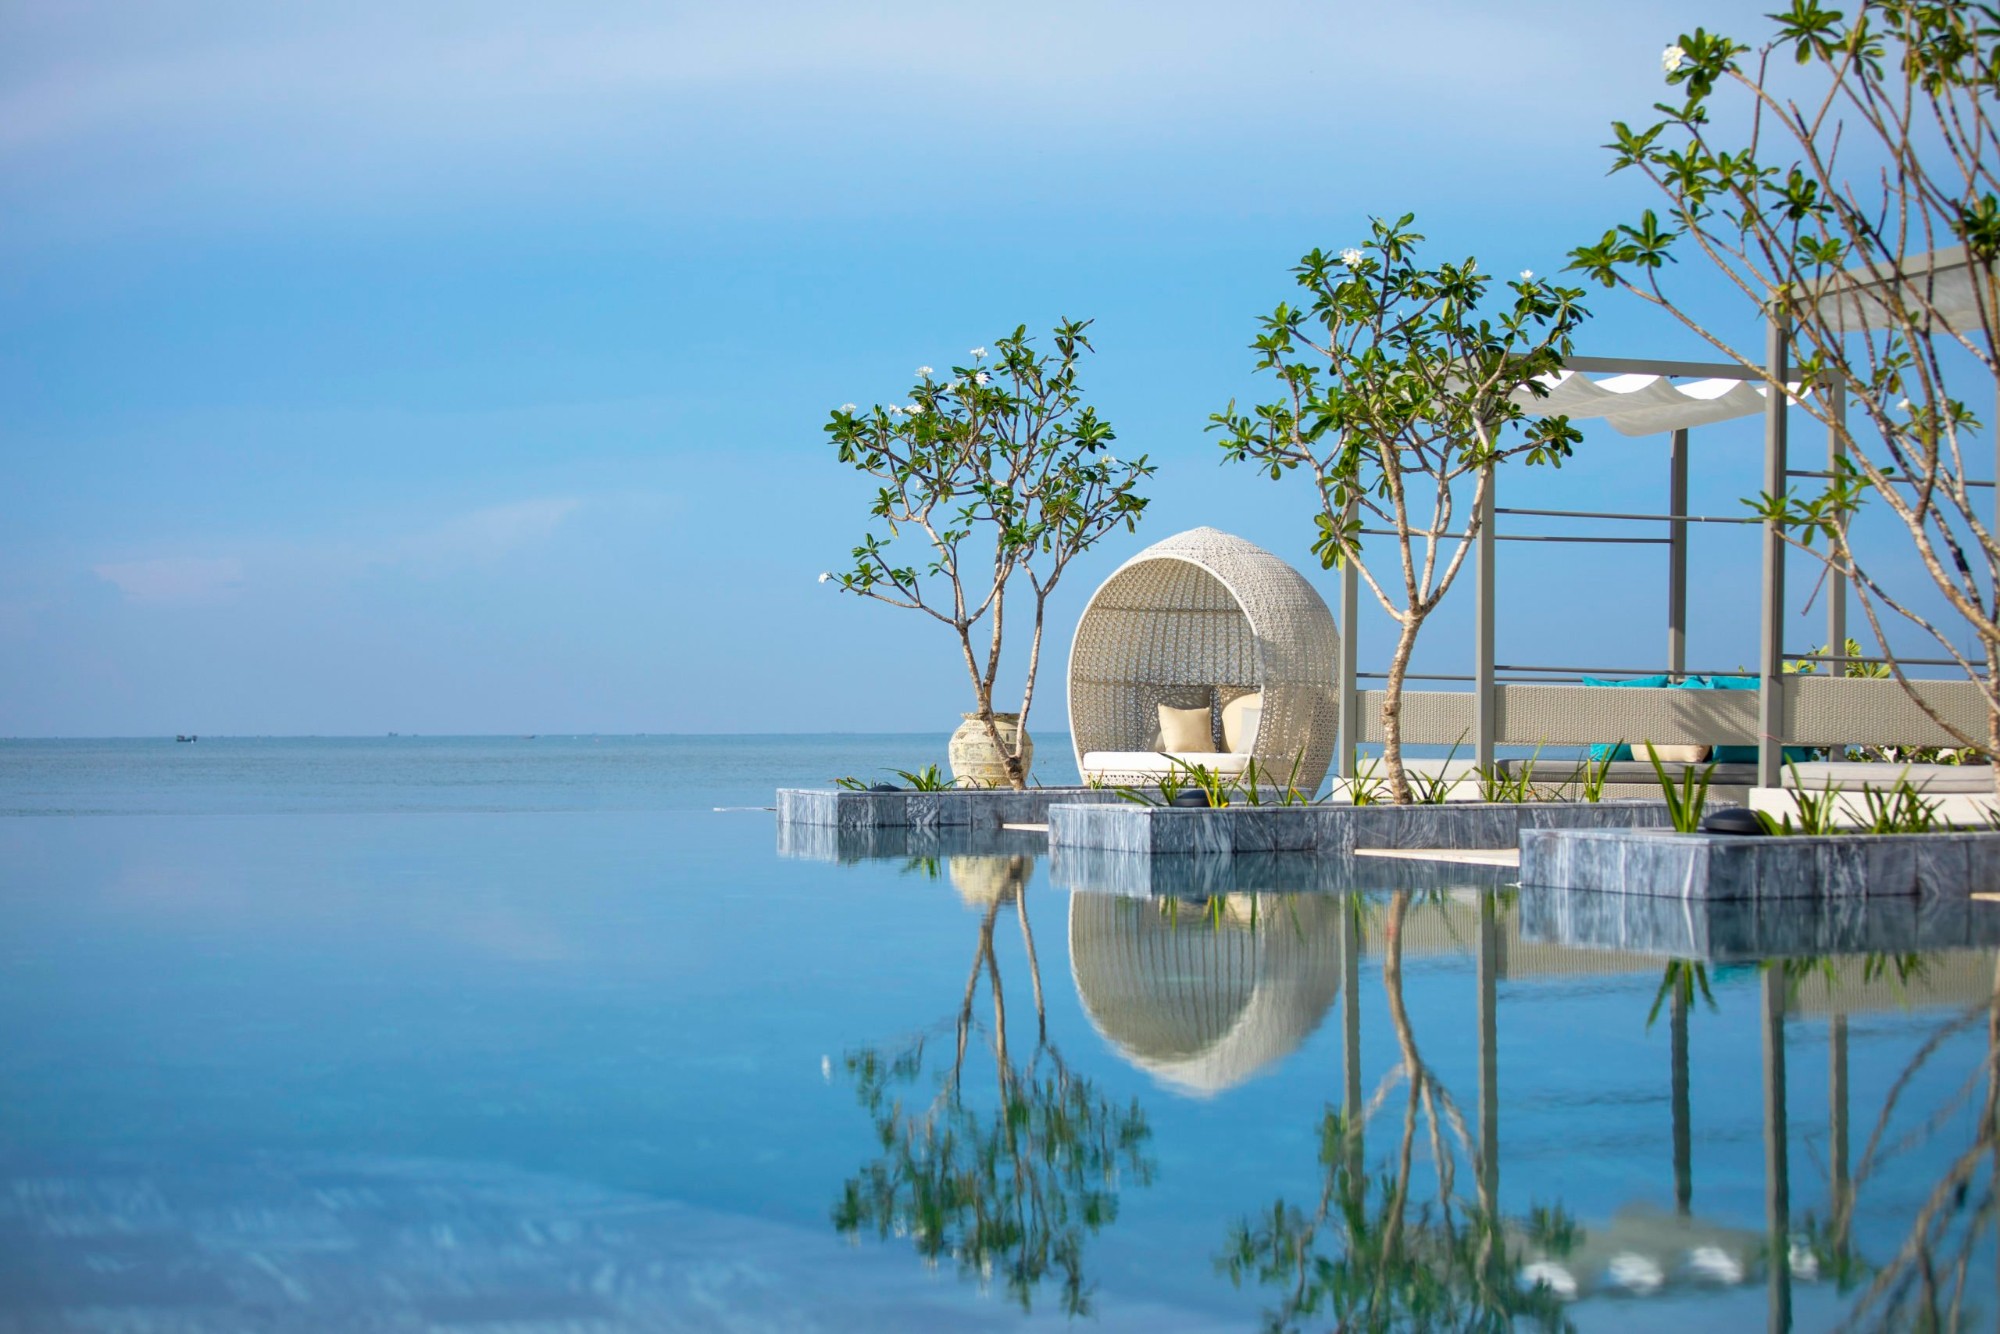 Thiết kế trang nhã cho du khách cảm nhận trọn vẹn vẻ đẹp biển cả của Melia Hồ Tràm Beach Resort